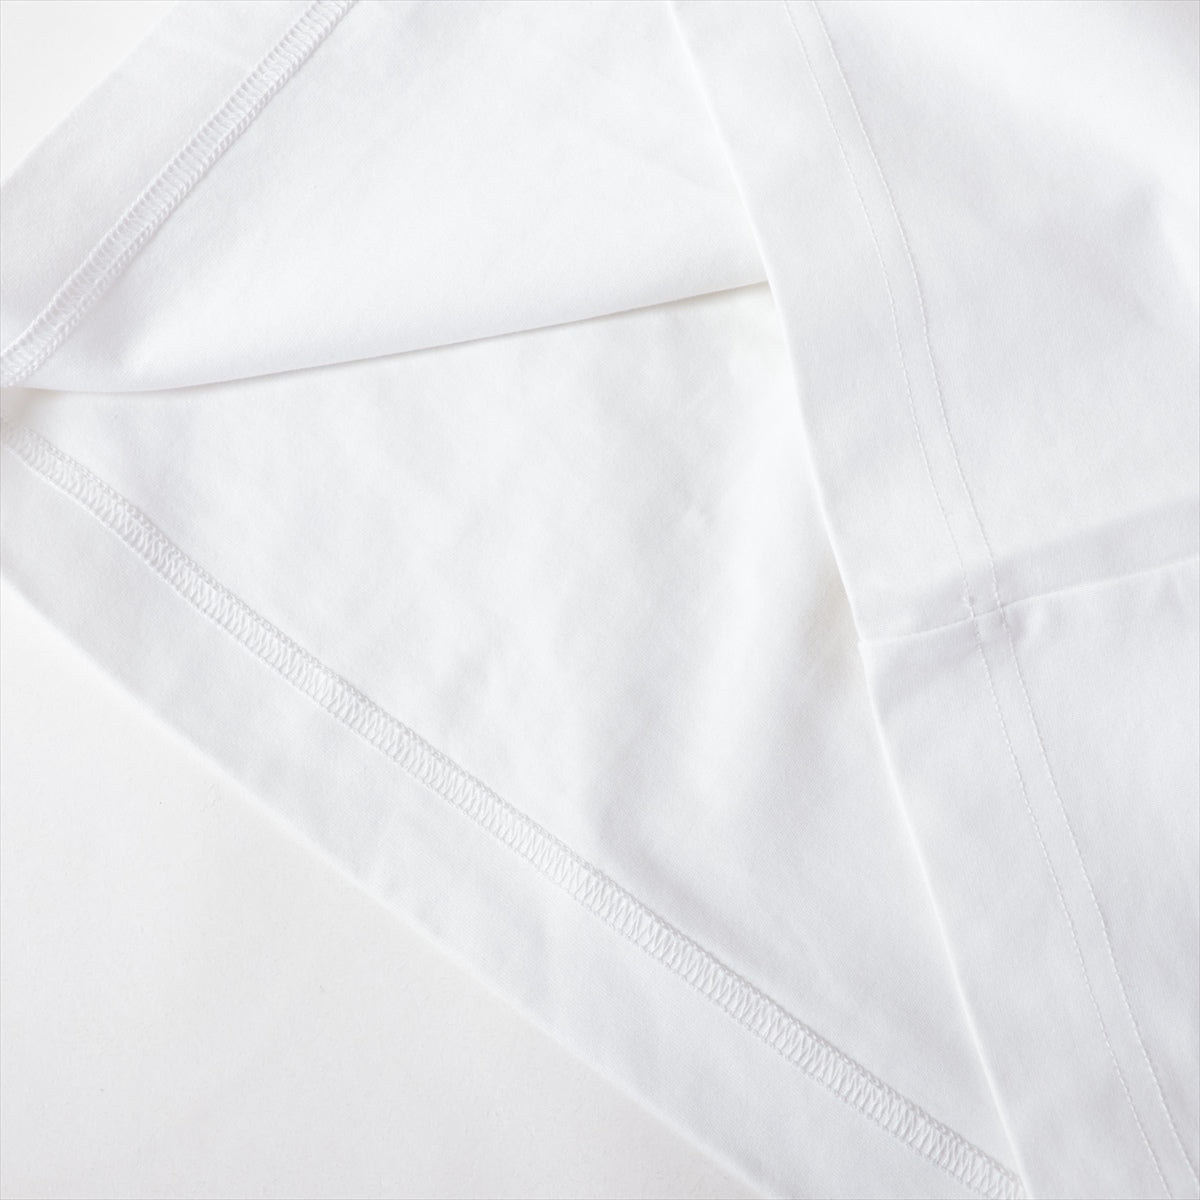 ドルチェ&ガッバーナ コットン×ナイロン Tシャツ 44 メンズ ホワイト